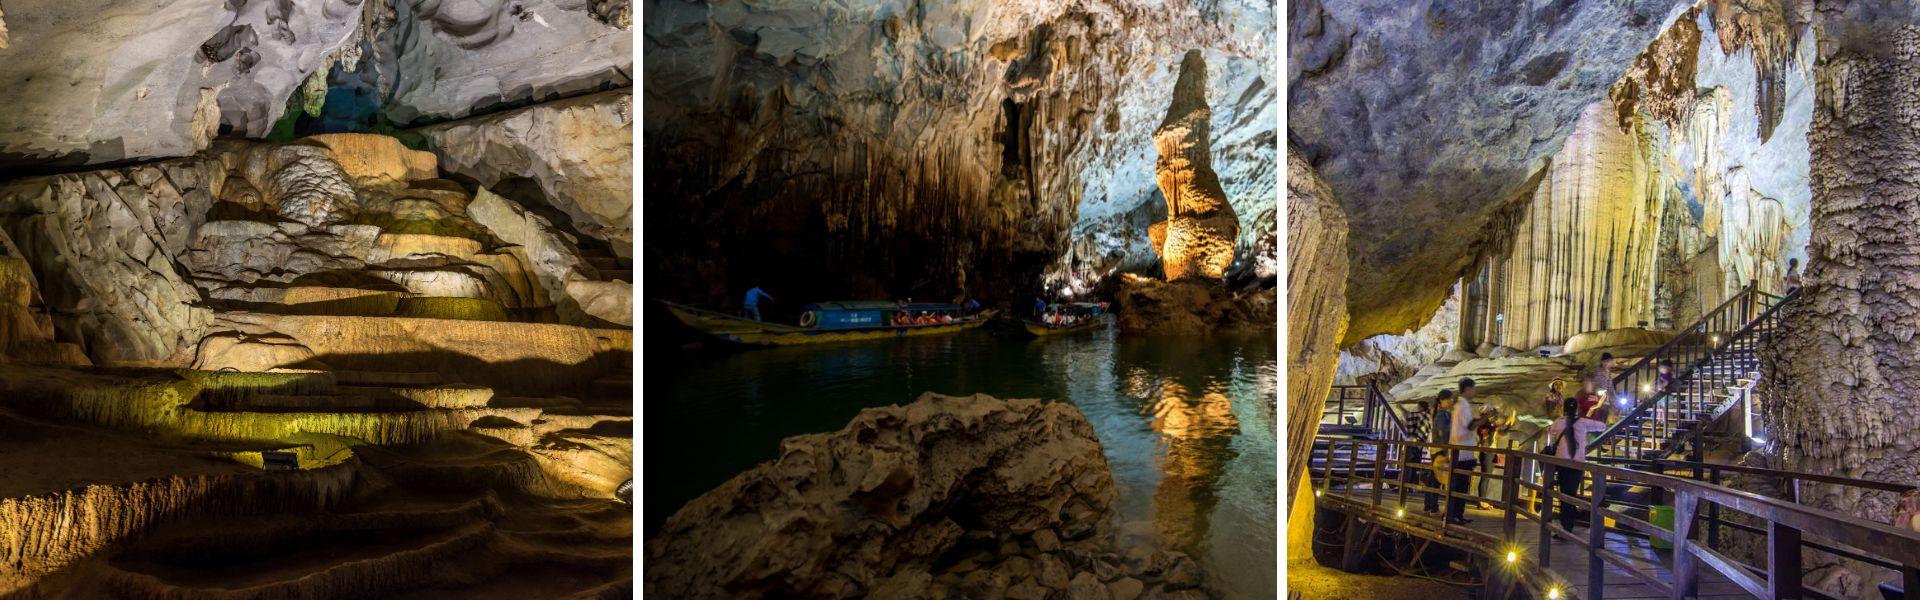 Guide de voyage, infos practiques à Quang Binh